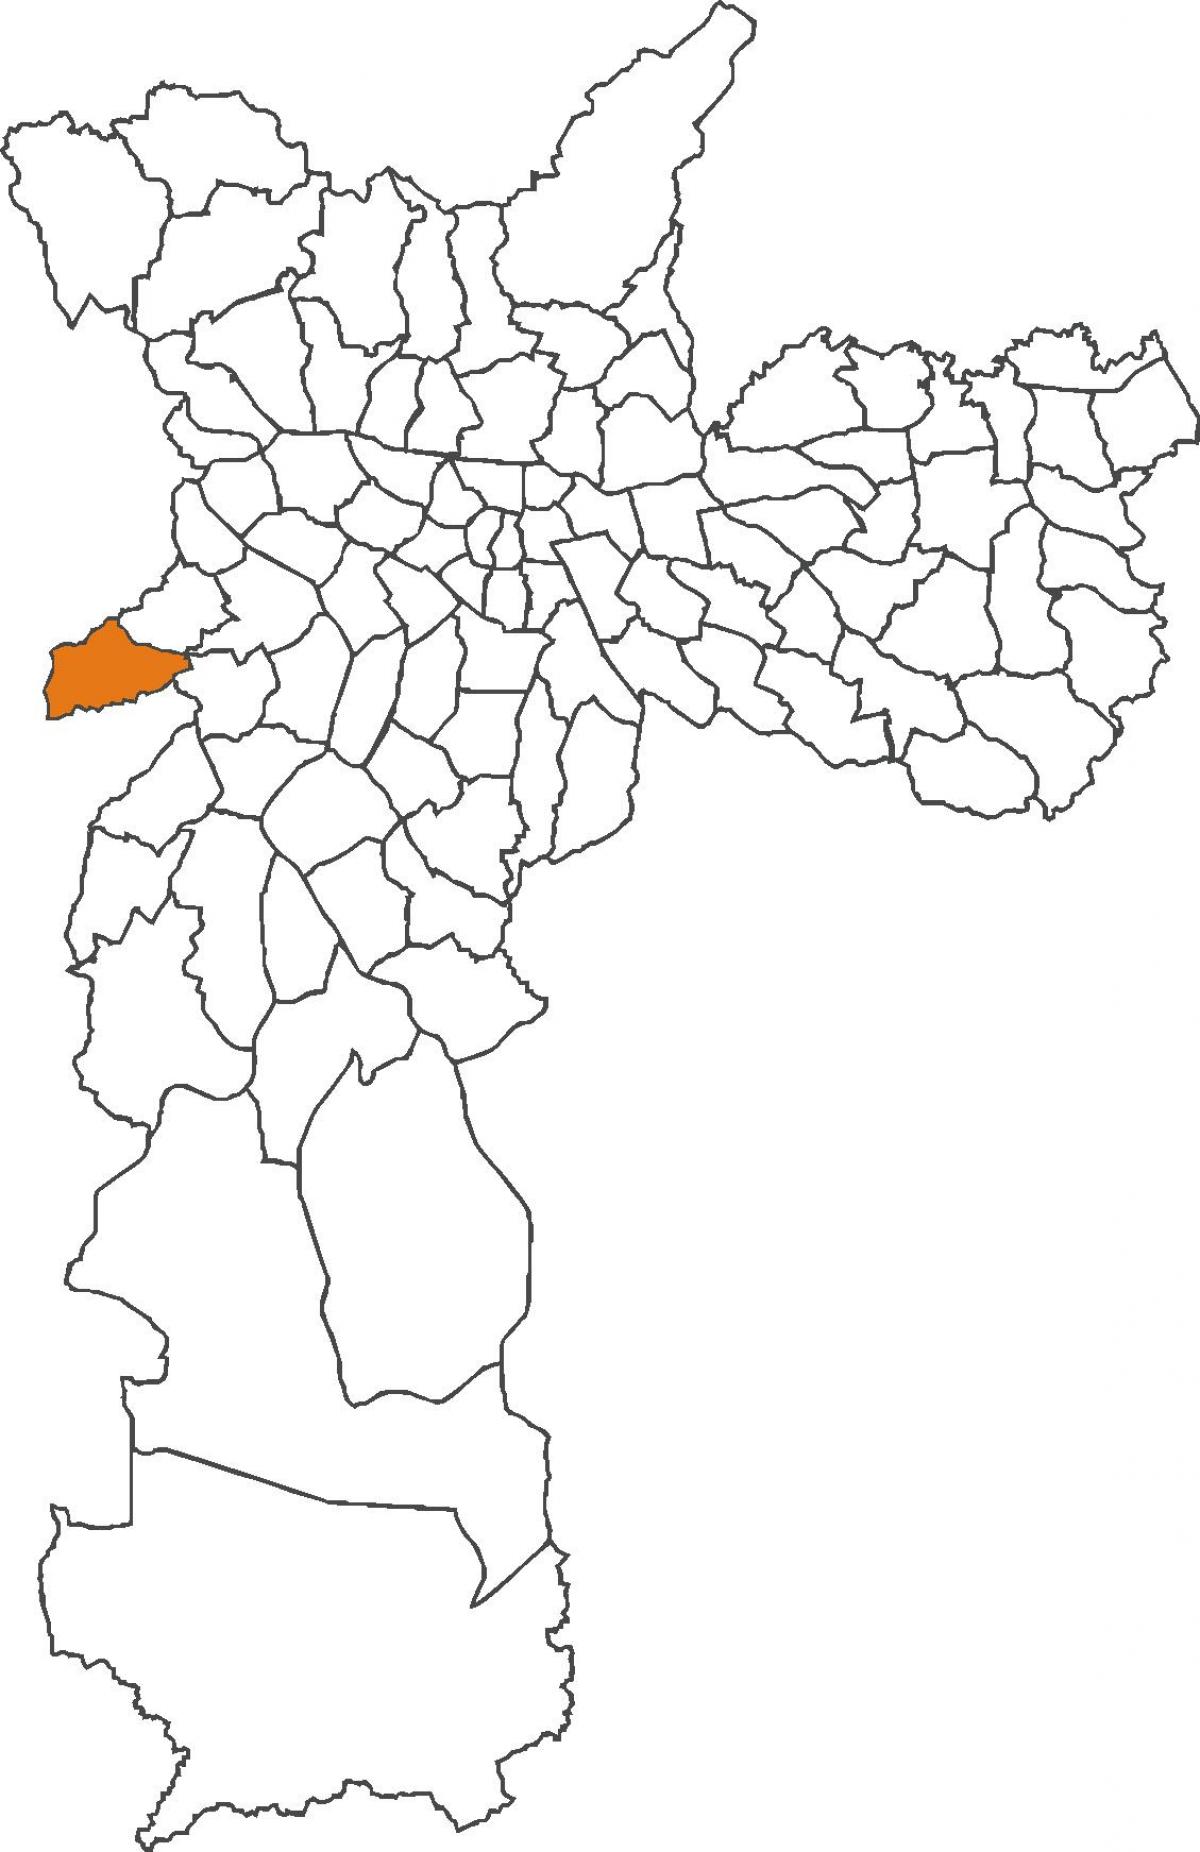 નકશો Raposo Tavares જિલ્લા